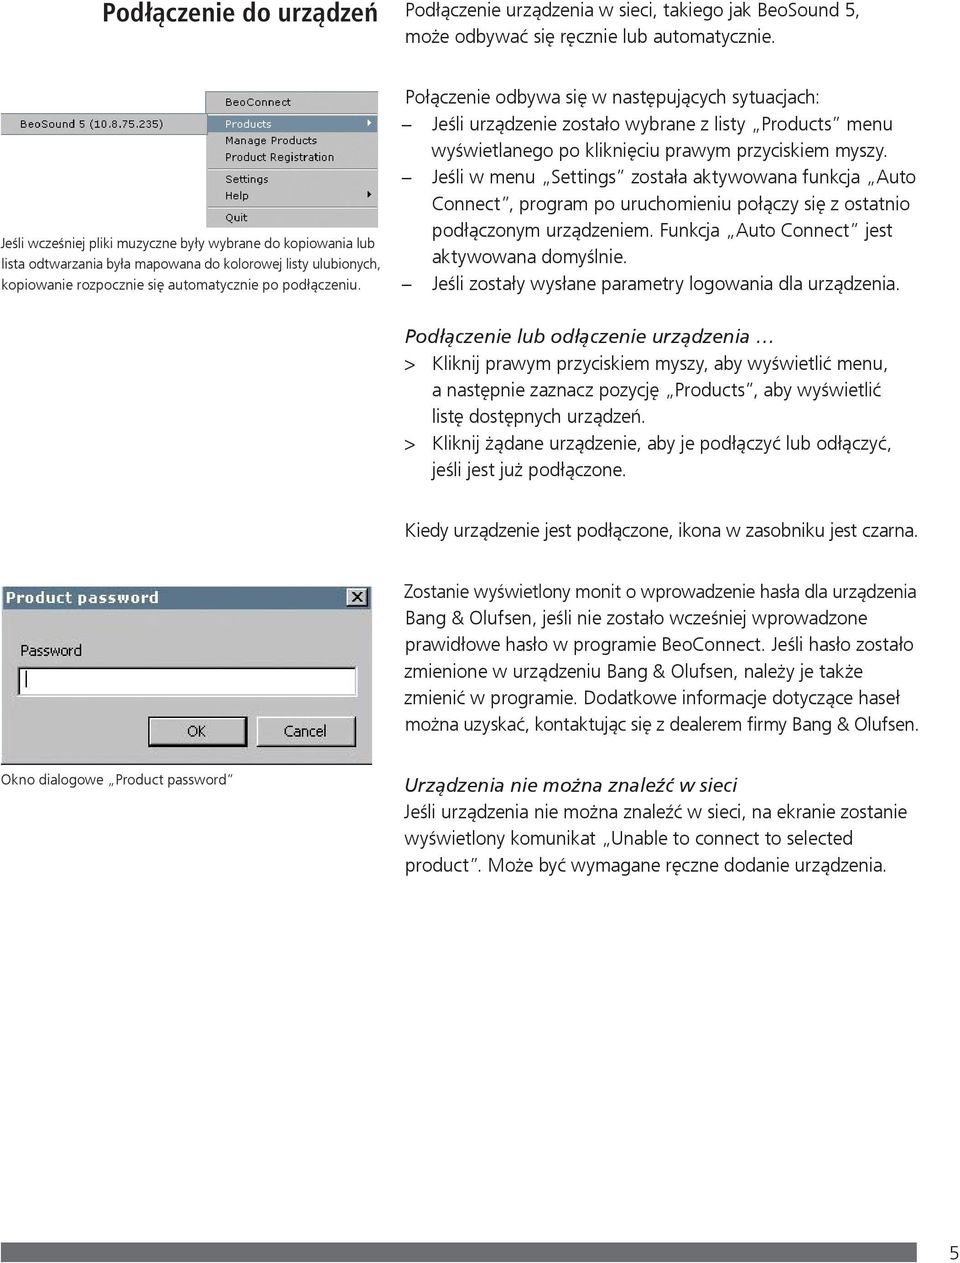 Połączenie odbywa się w następujących sytuacjach: Jeśli urządzenie zostało wybrane z listy Products menu wyświetlanego po kliknięciu prawym przyciskiem myszy.